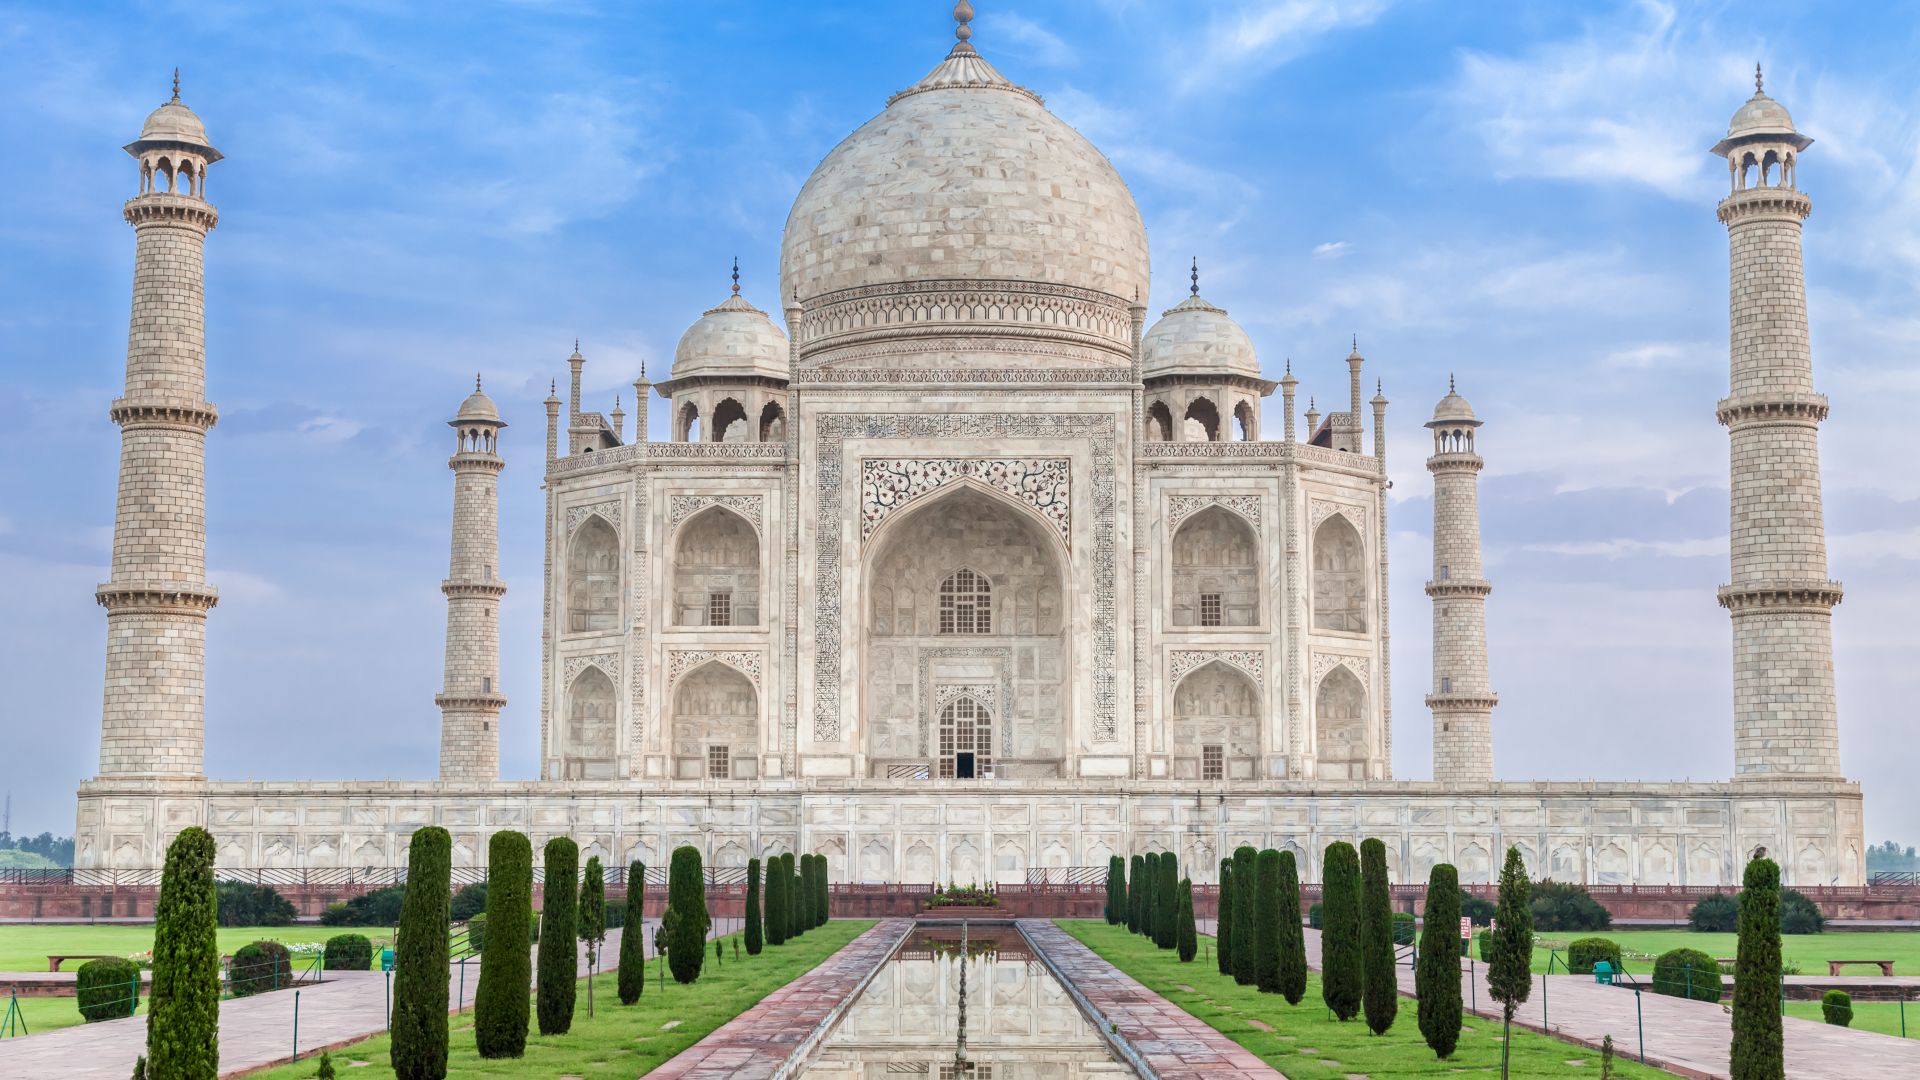 Taj Mahal, India, temple, castle, travel, tourism (horizontal)